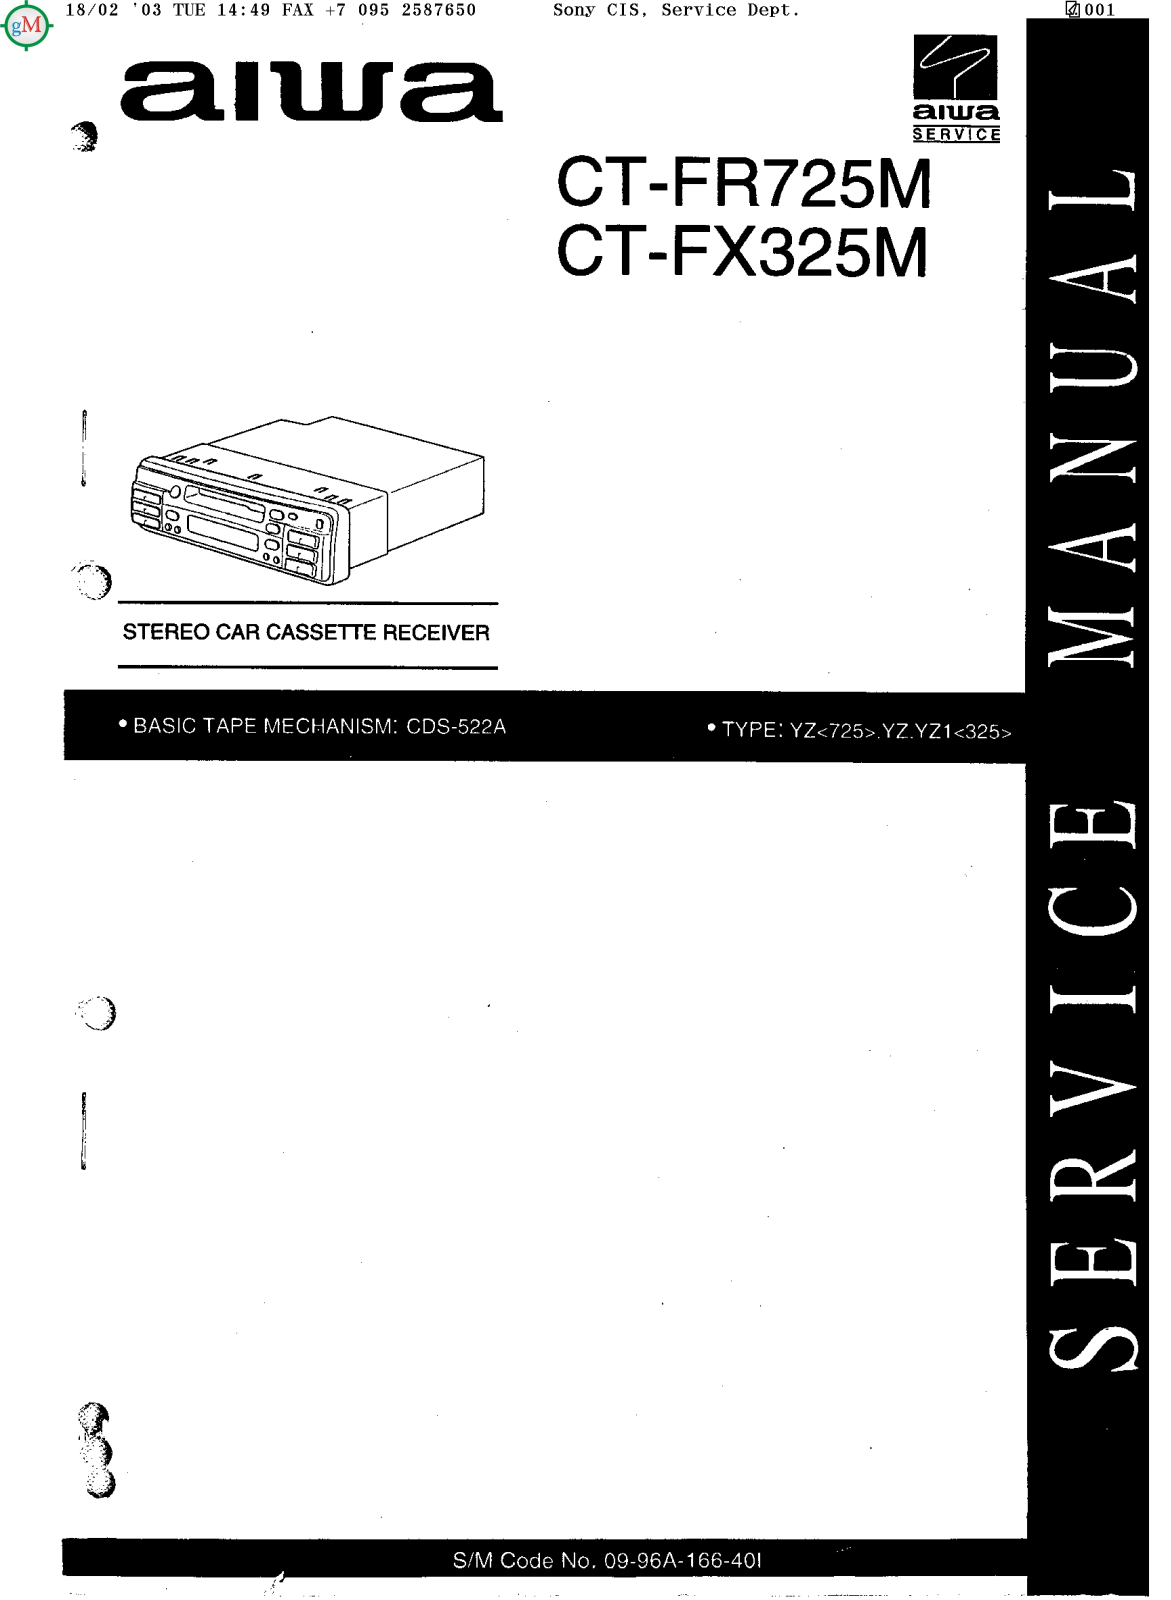 Aiwa CT-FX325M, CT-FR725M Service manual